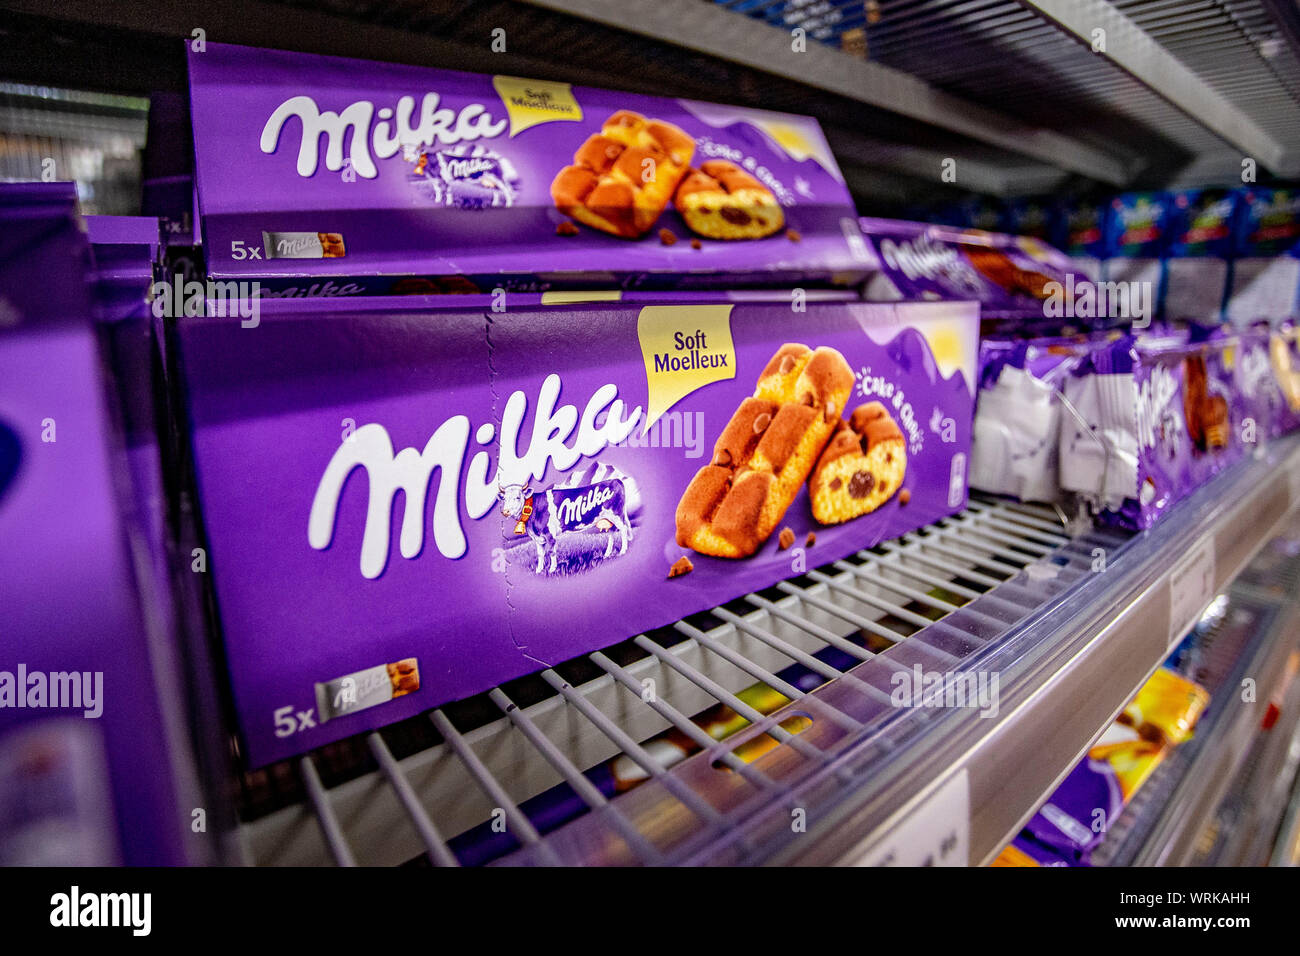 IMUSA Chocolate Molinillo - Kikos Supermarket - Delivered by Mercato